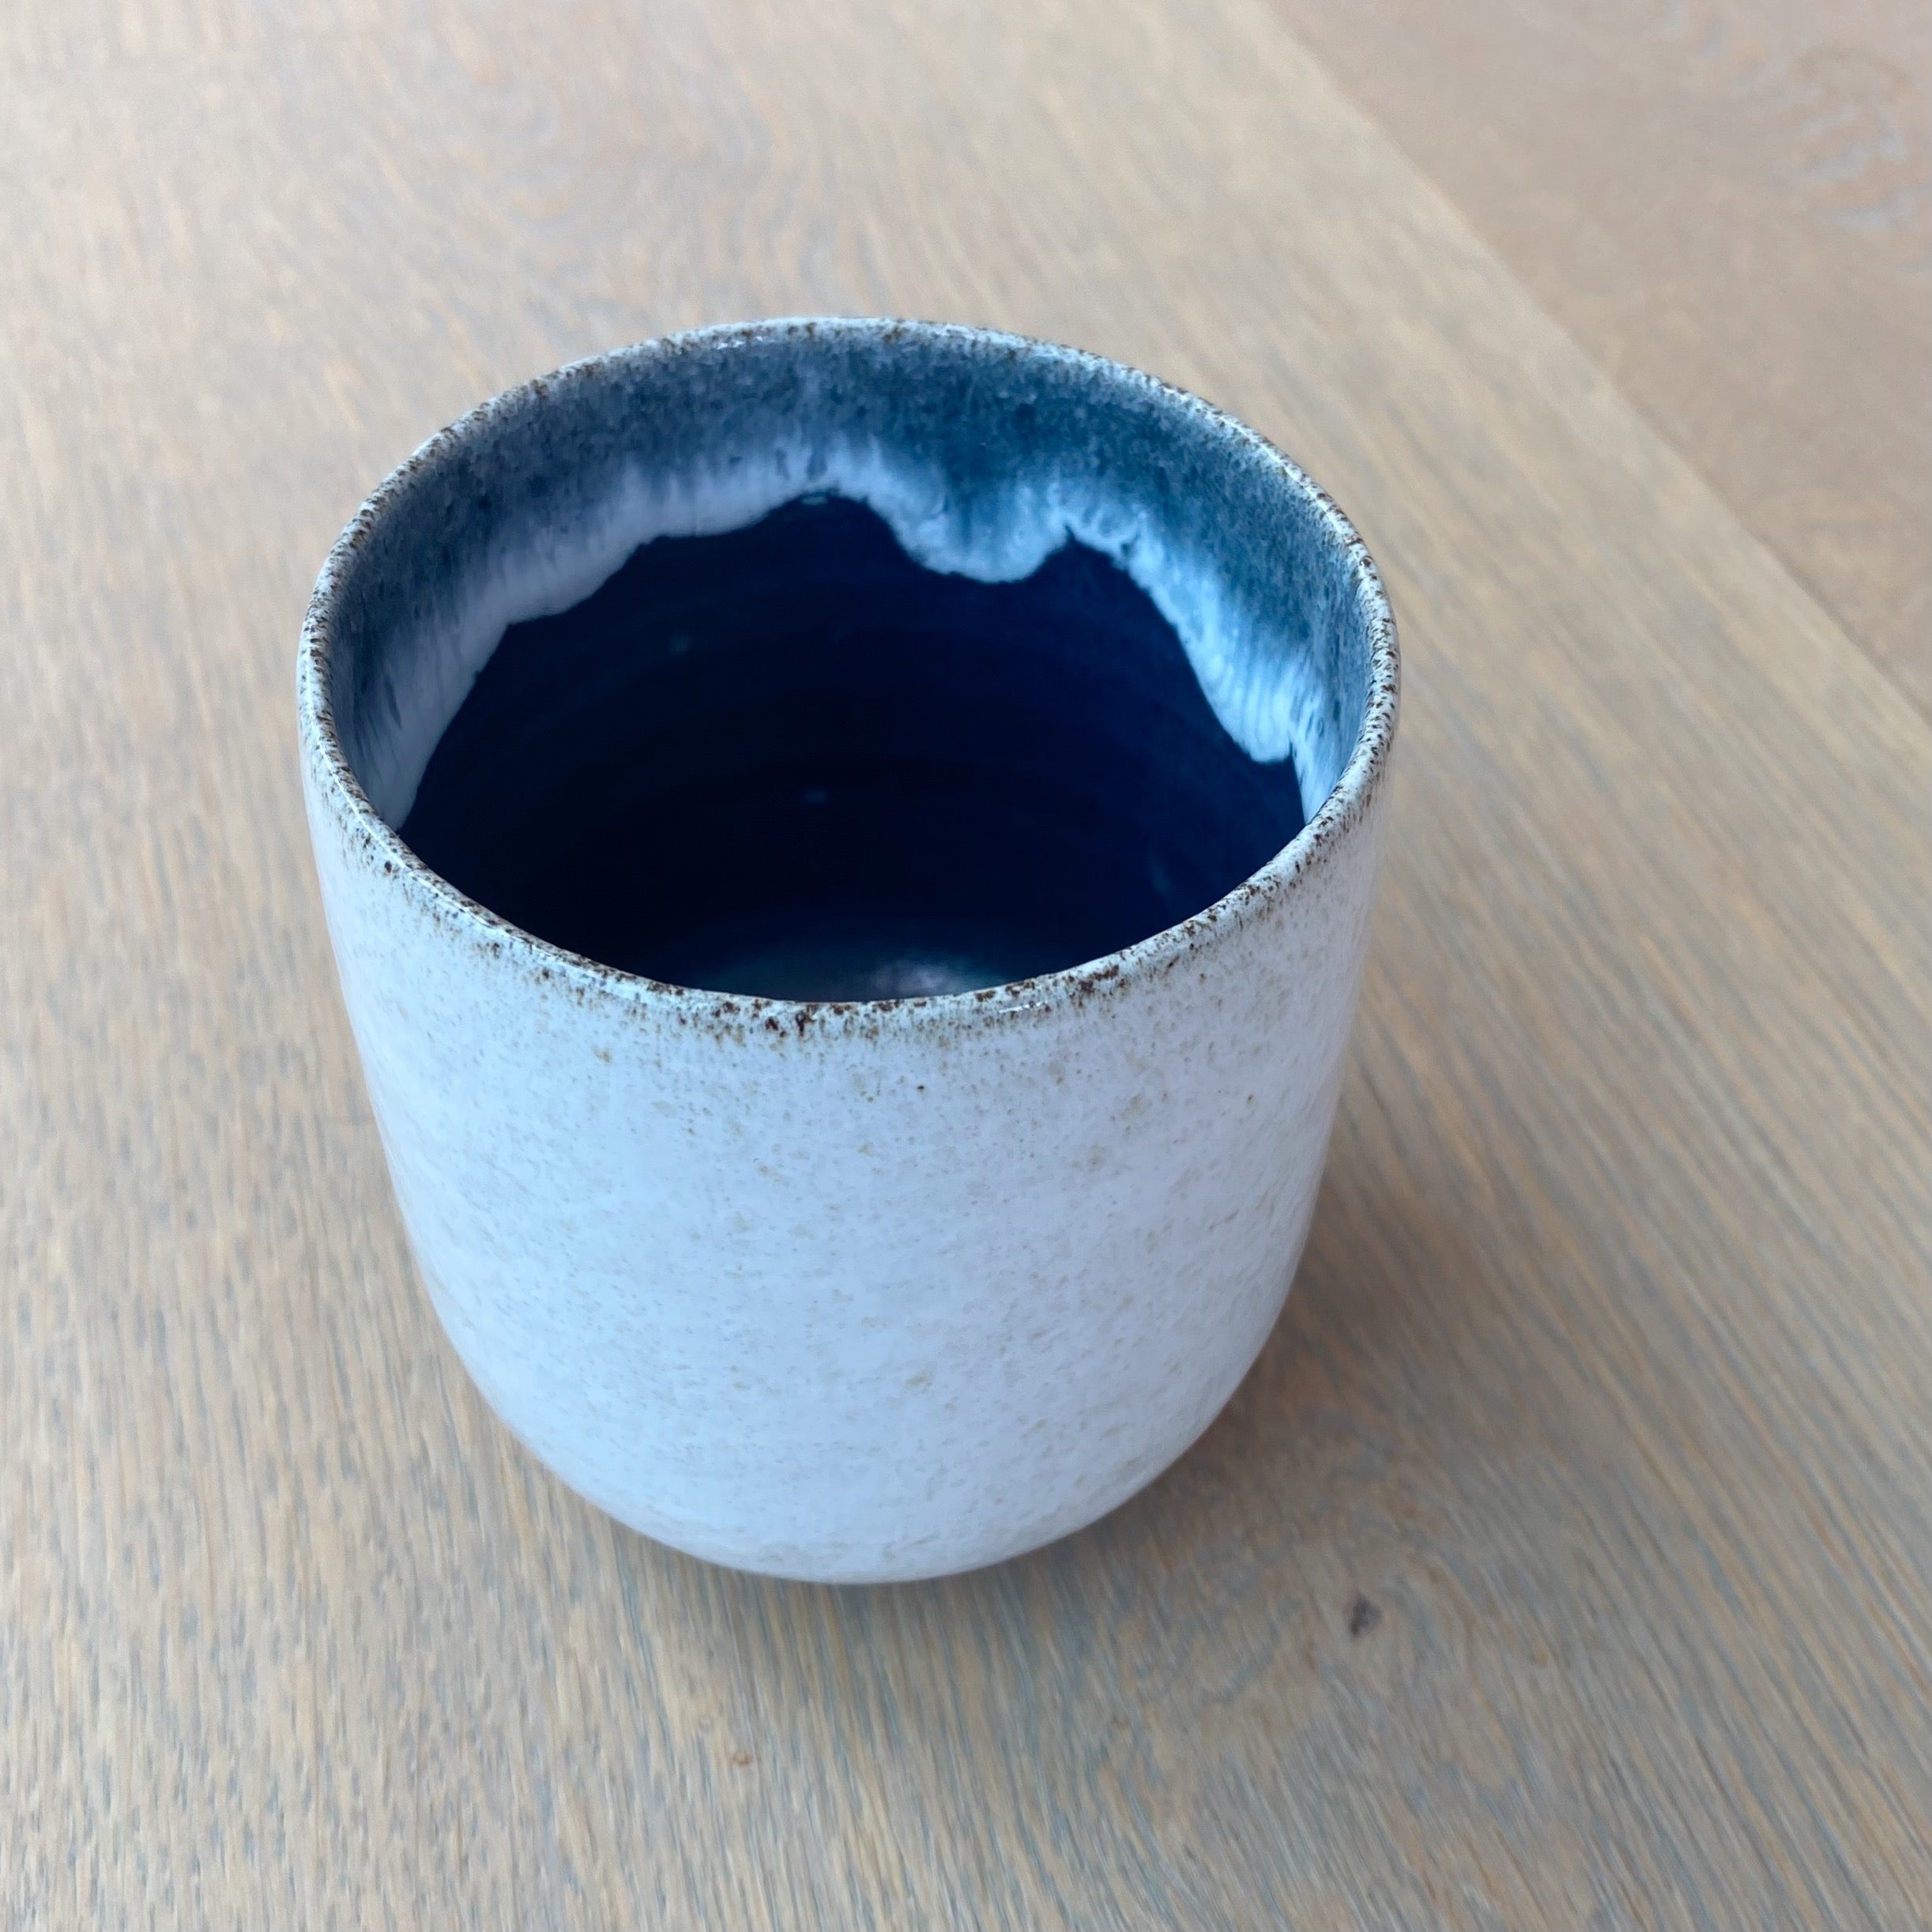 Tasja P kaffekop - off white og mørkeblå